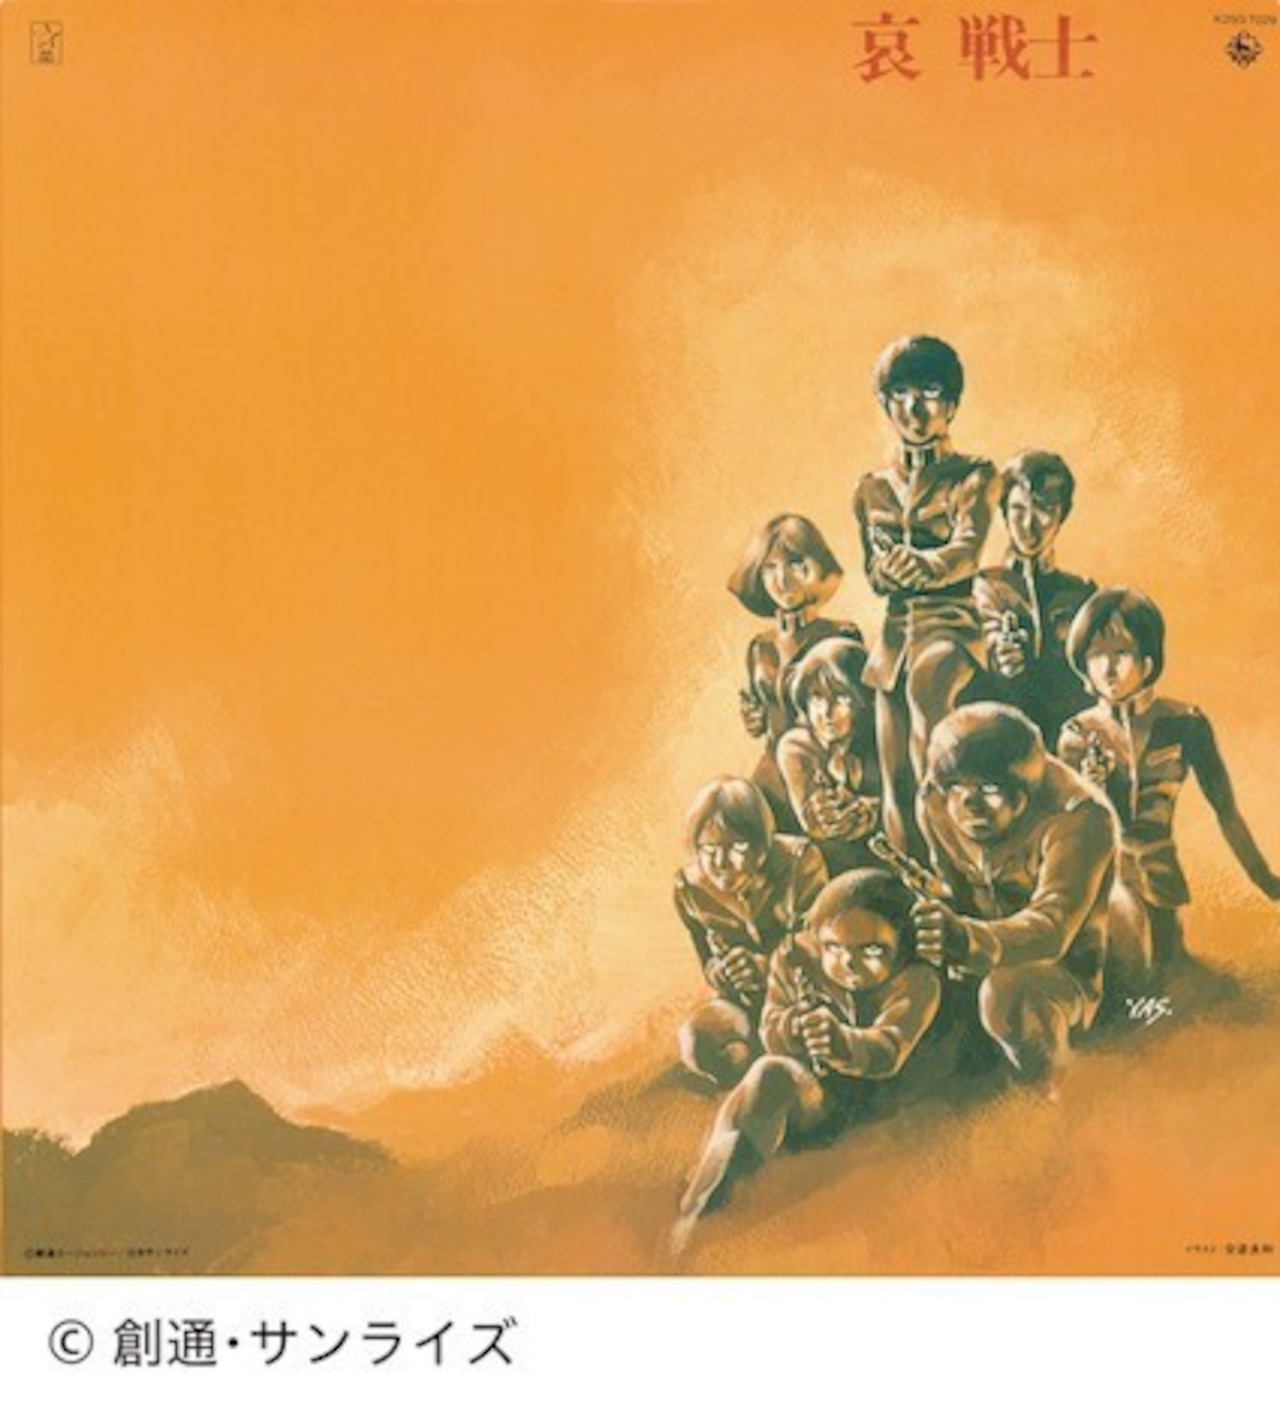 渡辺 岳夫・松山 祐士「機動戦士ガンダム　 哀 戦士」12インチアナログ盤